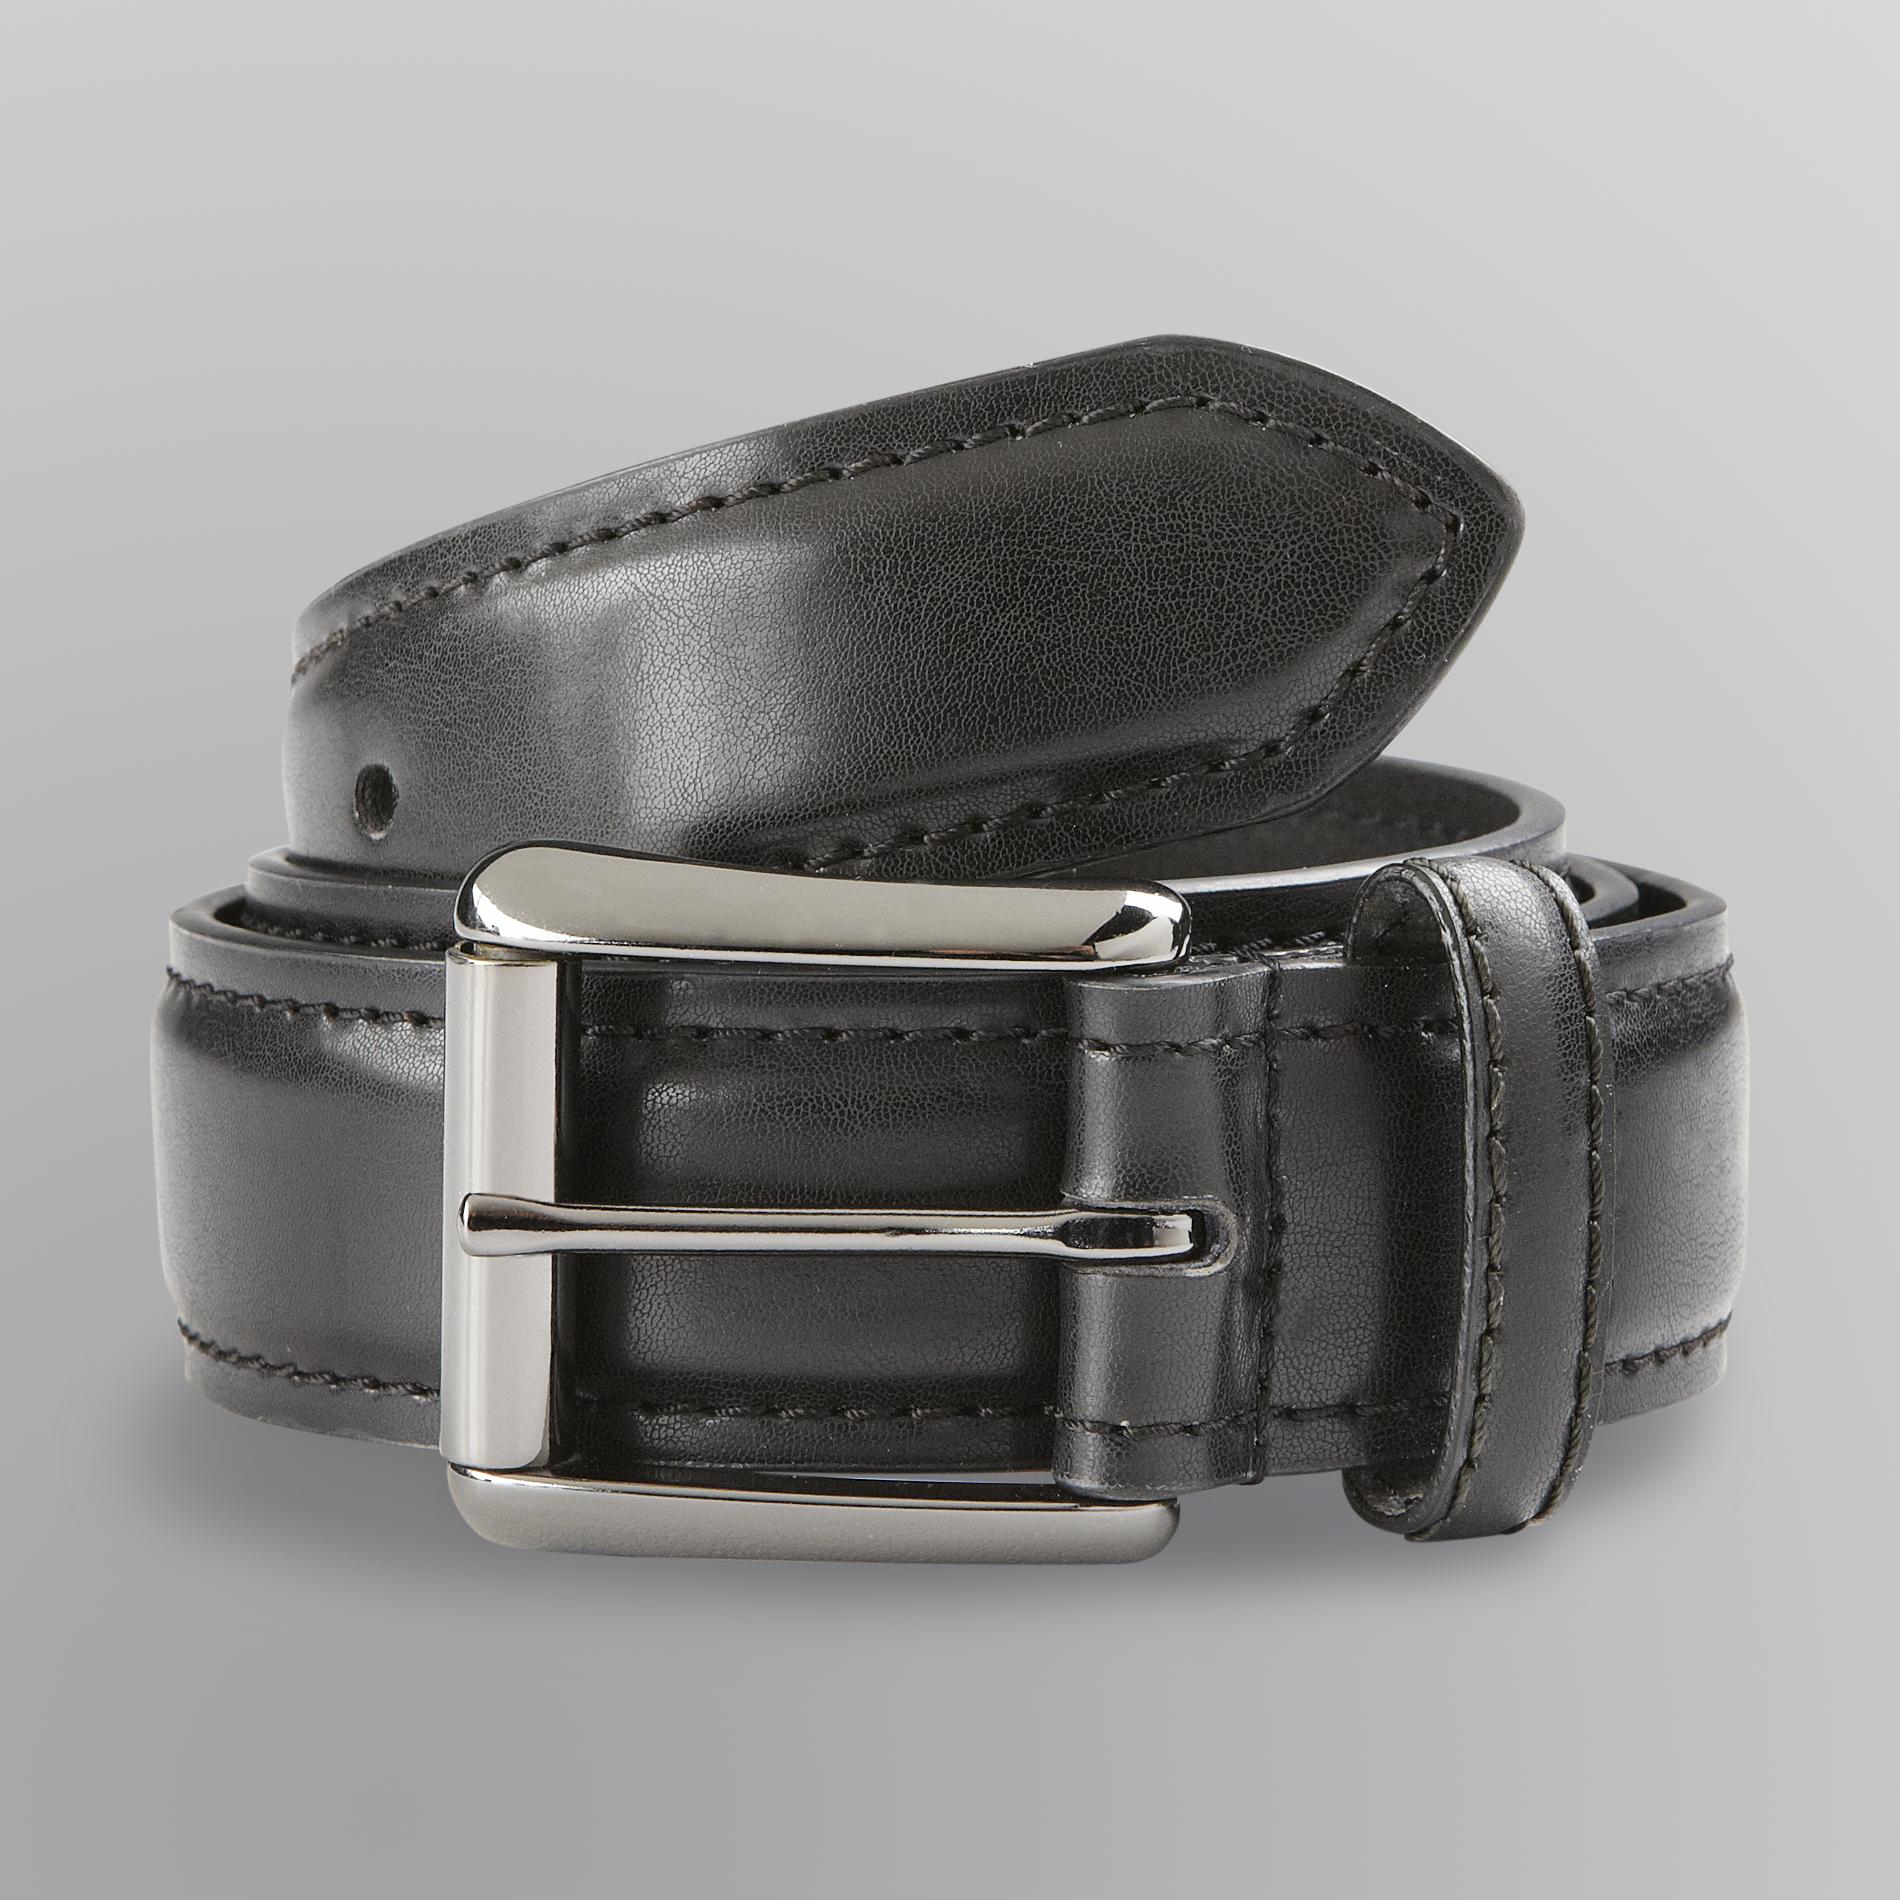 Genuine Dickies Men's Genuine Leather Belt